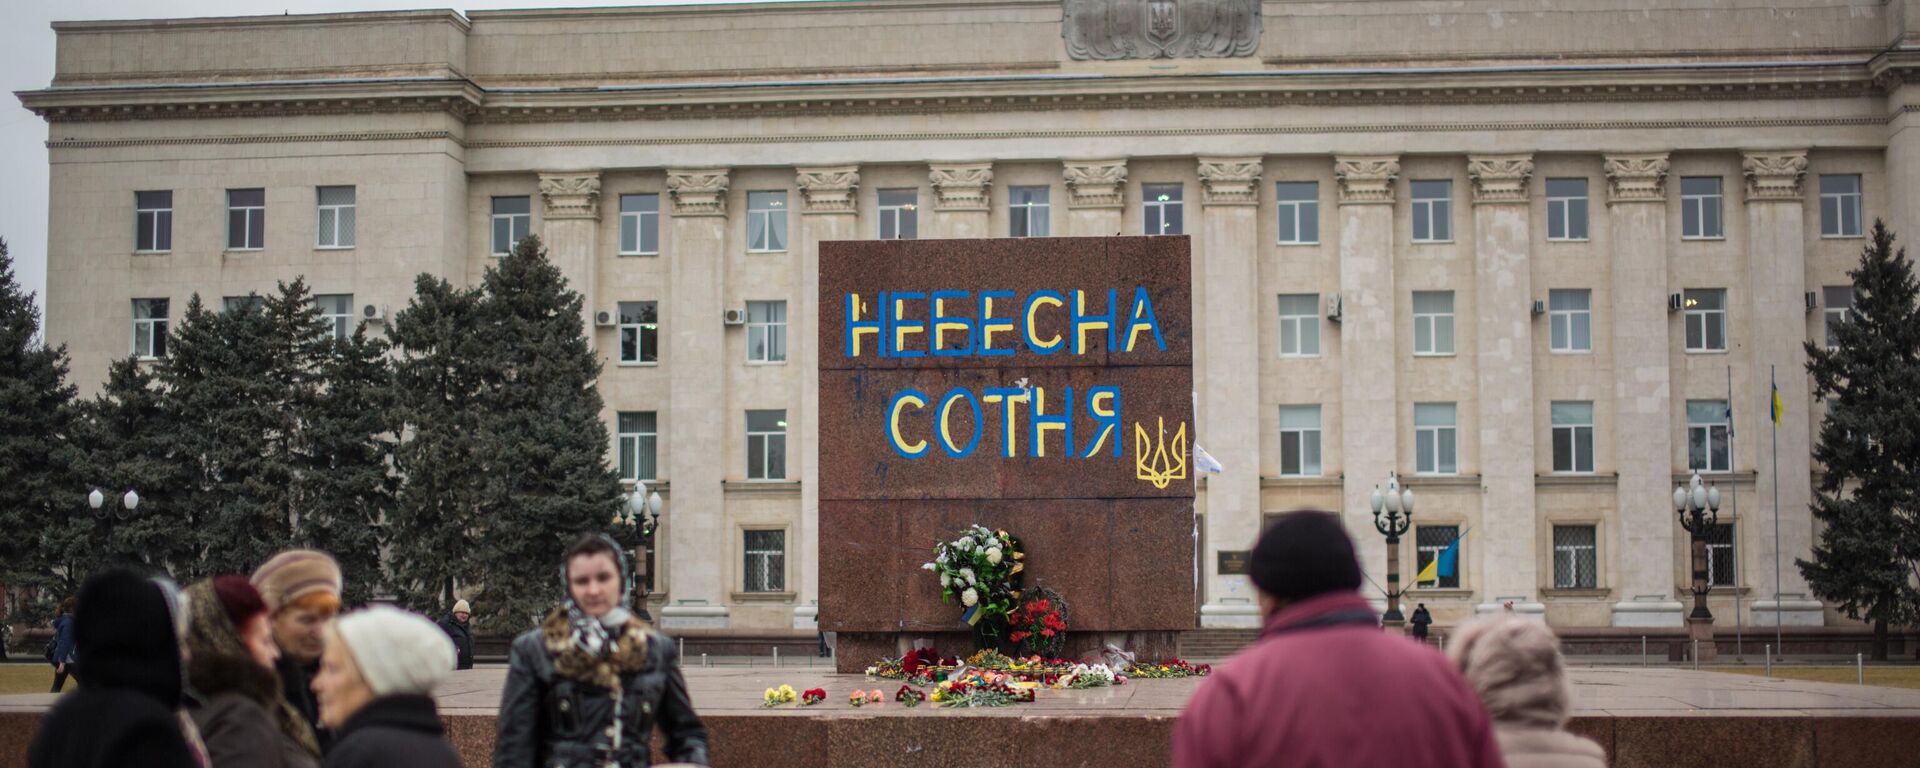 Dòng chữ “Trăm người  hùng” trên bệ tượng đài V.I. Lênin bị phá bỏ ở quảng trường trước tòa nhà hành chính khu vực ở Kherson. - Sputnik Việt Nam, 1920, 17.02.2024